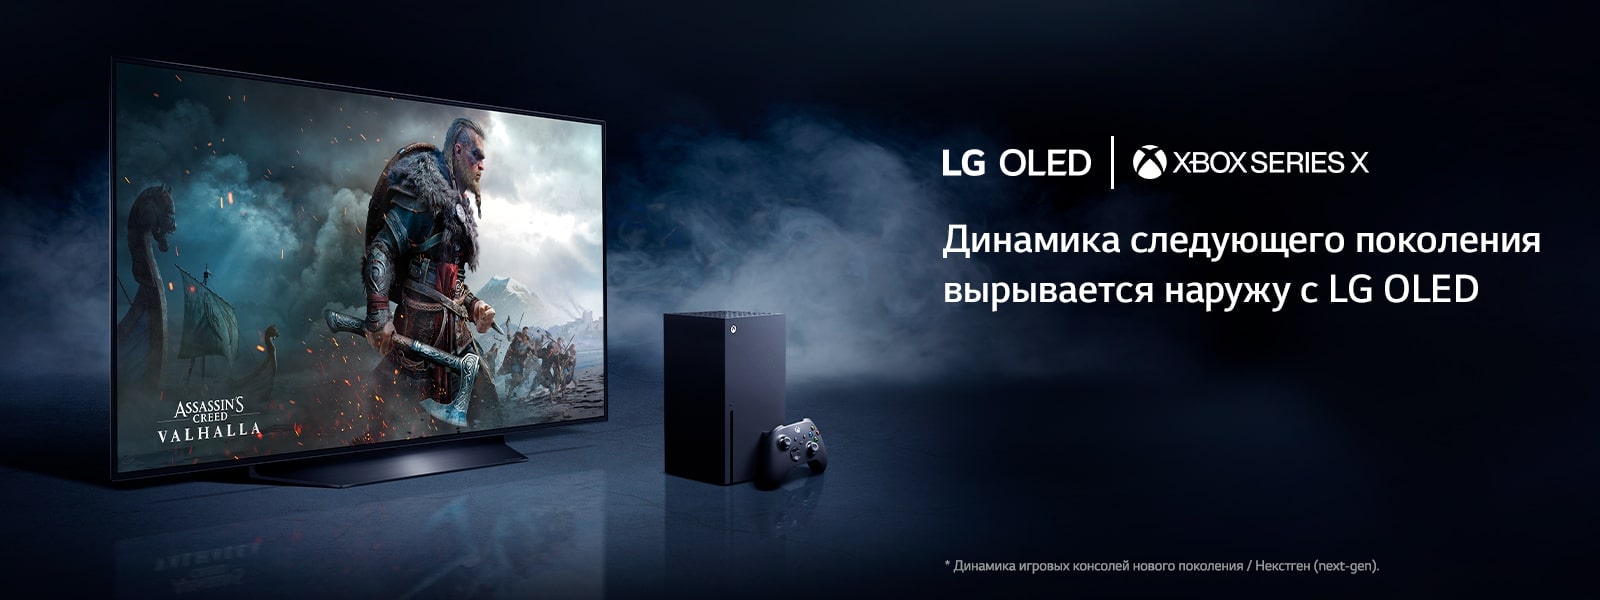 Какой Формат видео поддерживает телевизор LG С флешки. При покупке LG OLED подписка в подарок.